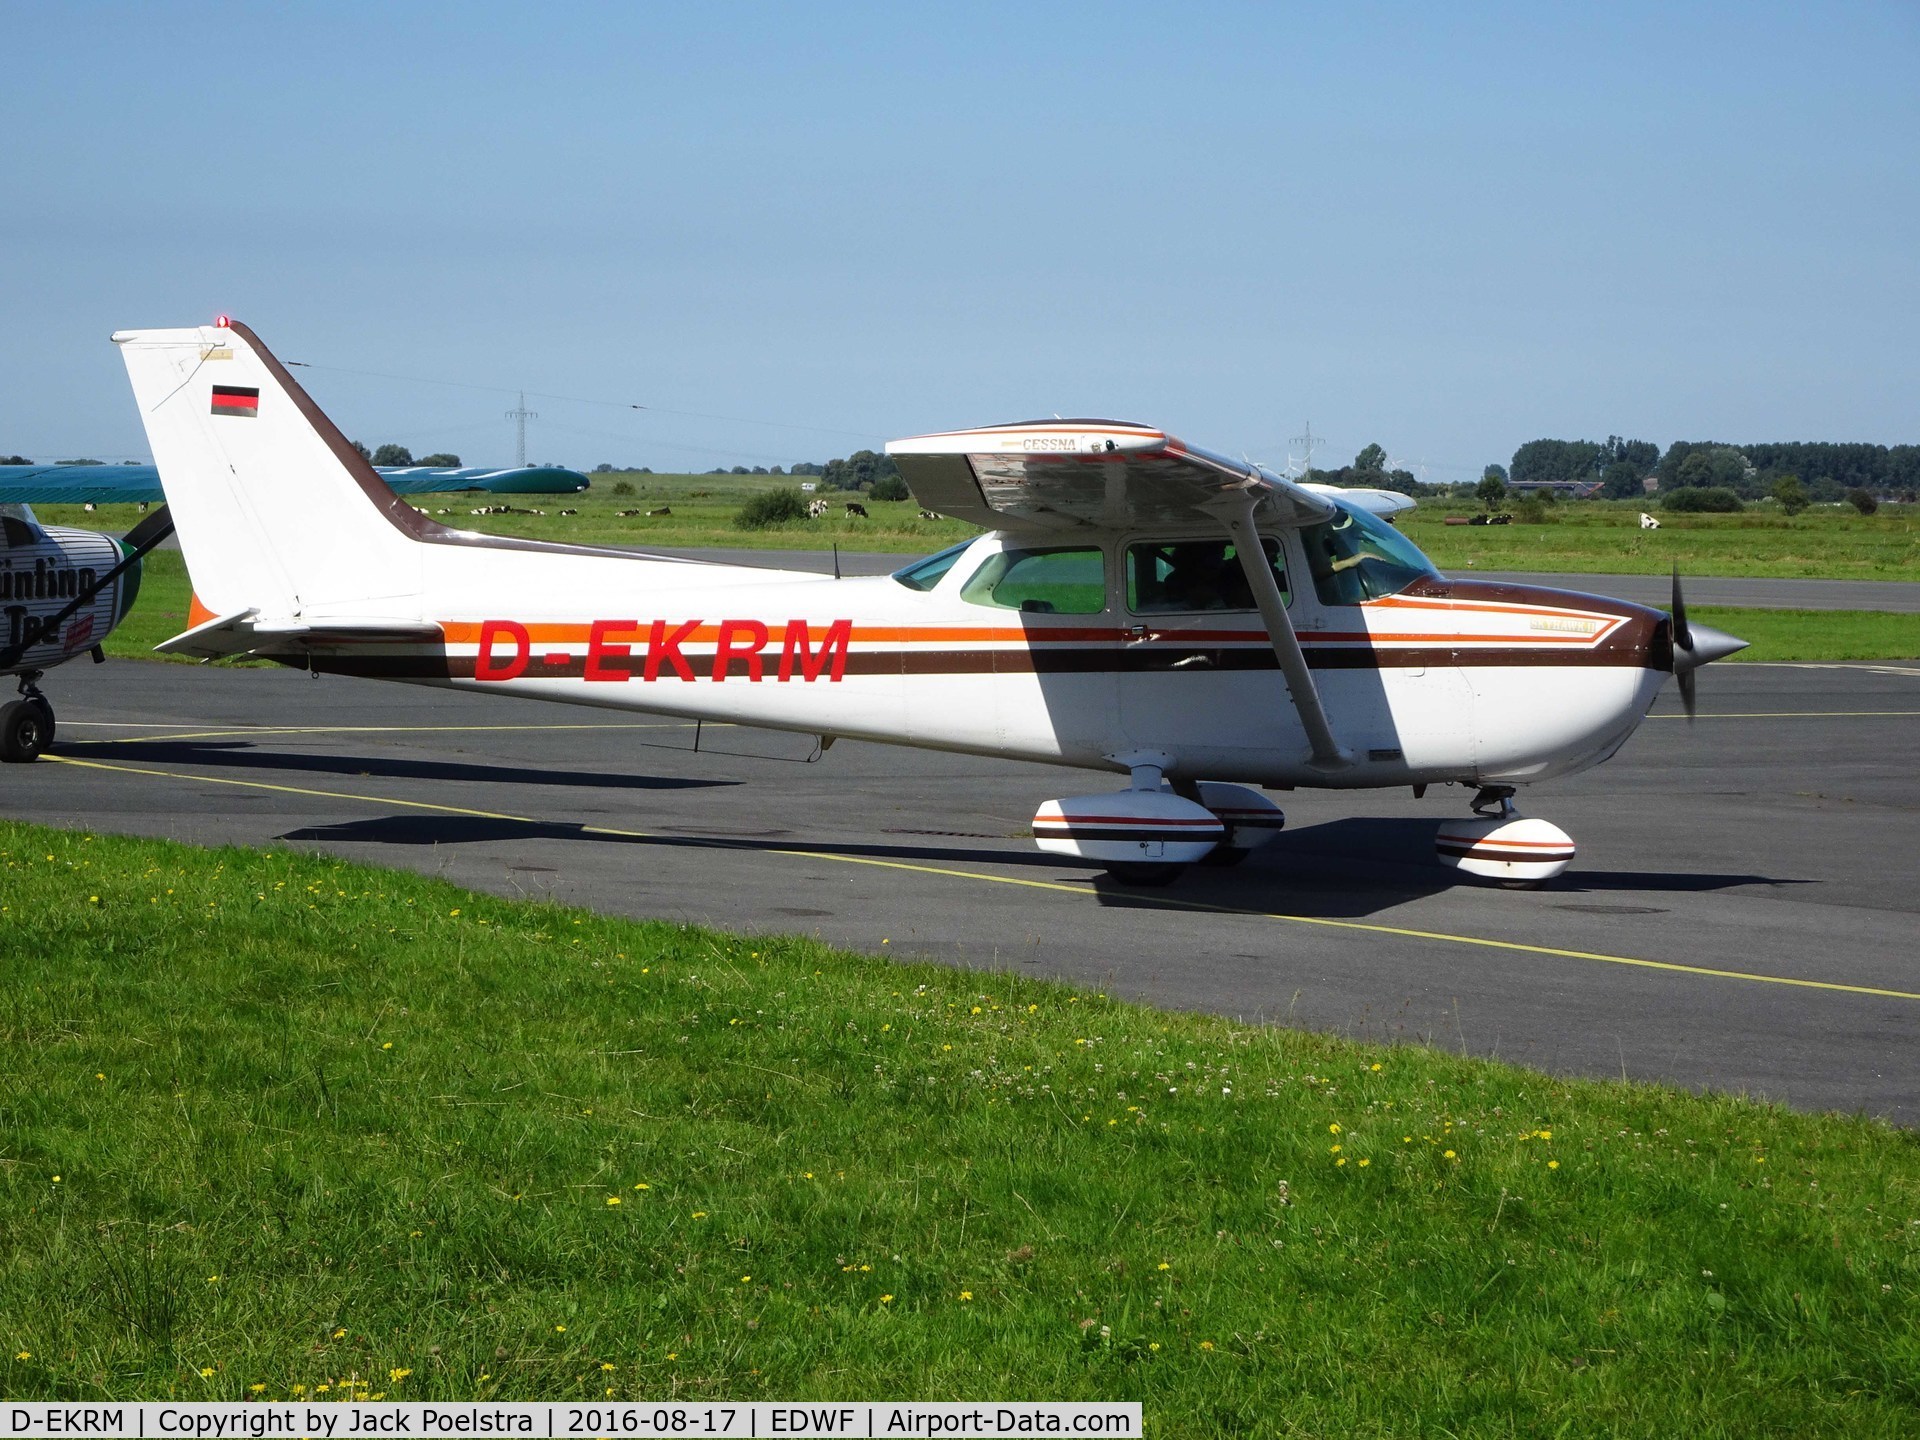 D-EKRM, Cessna 172P C/N 17274481, D-EKRM at Leer-Papenburg airport